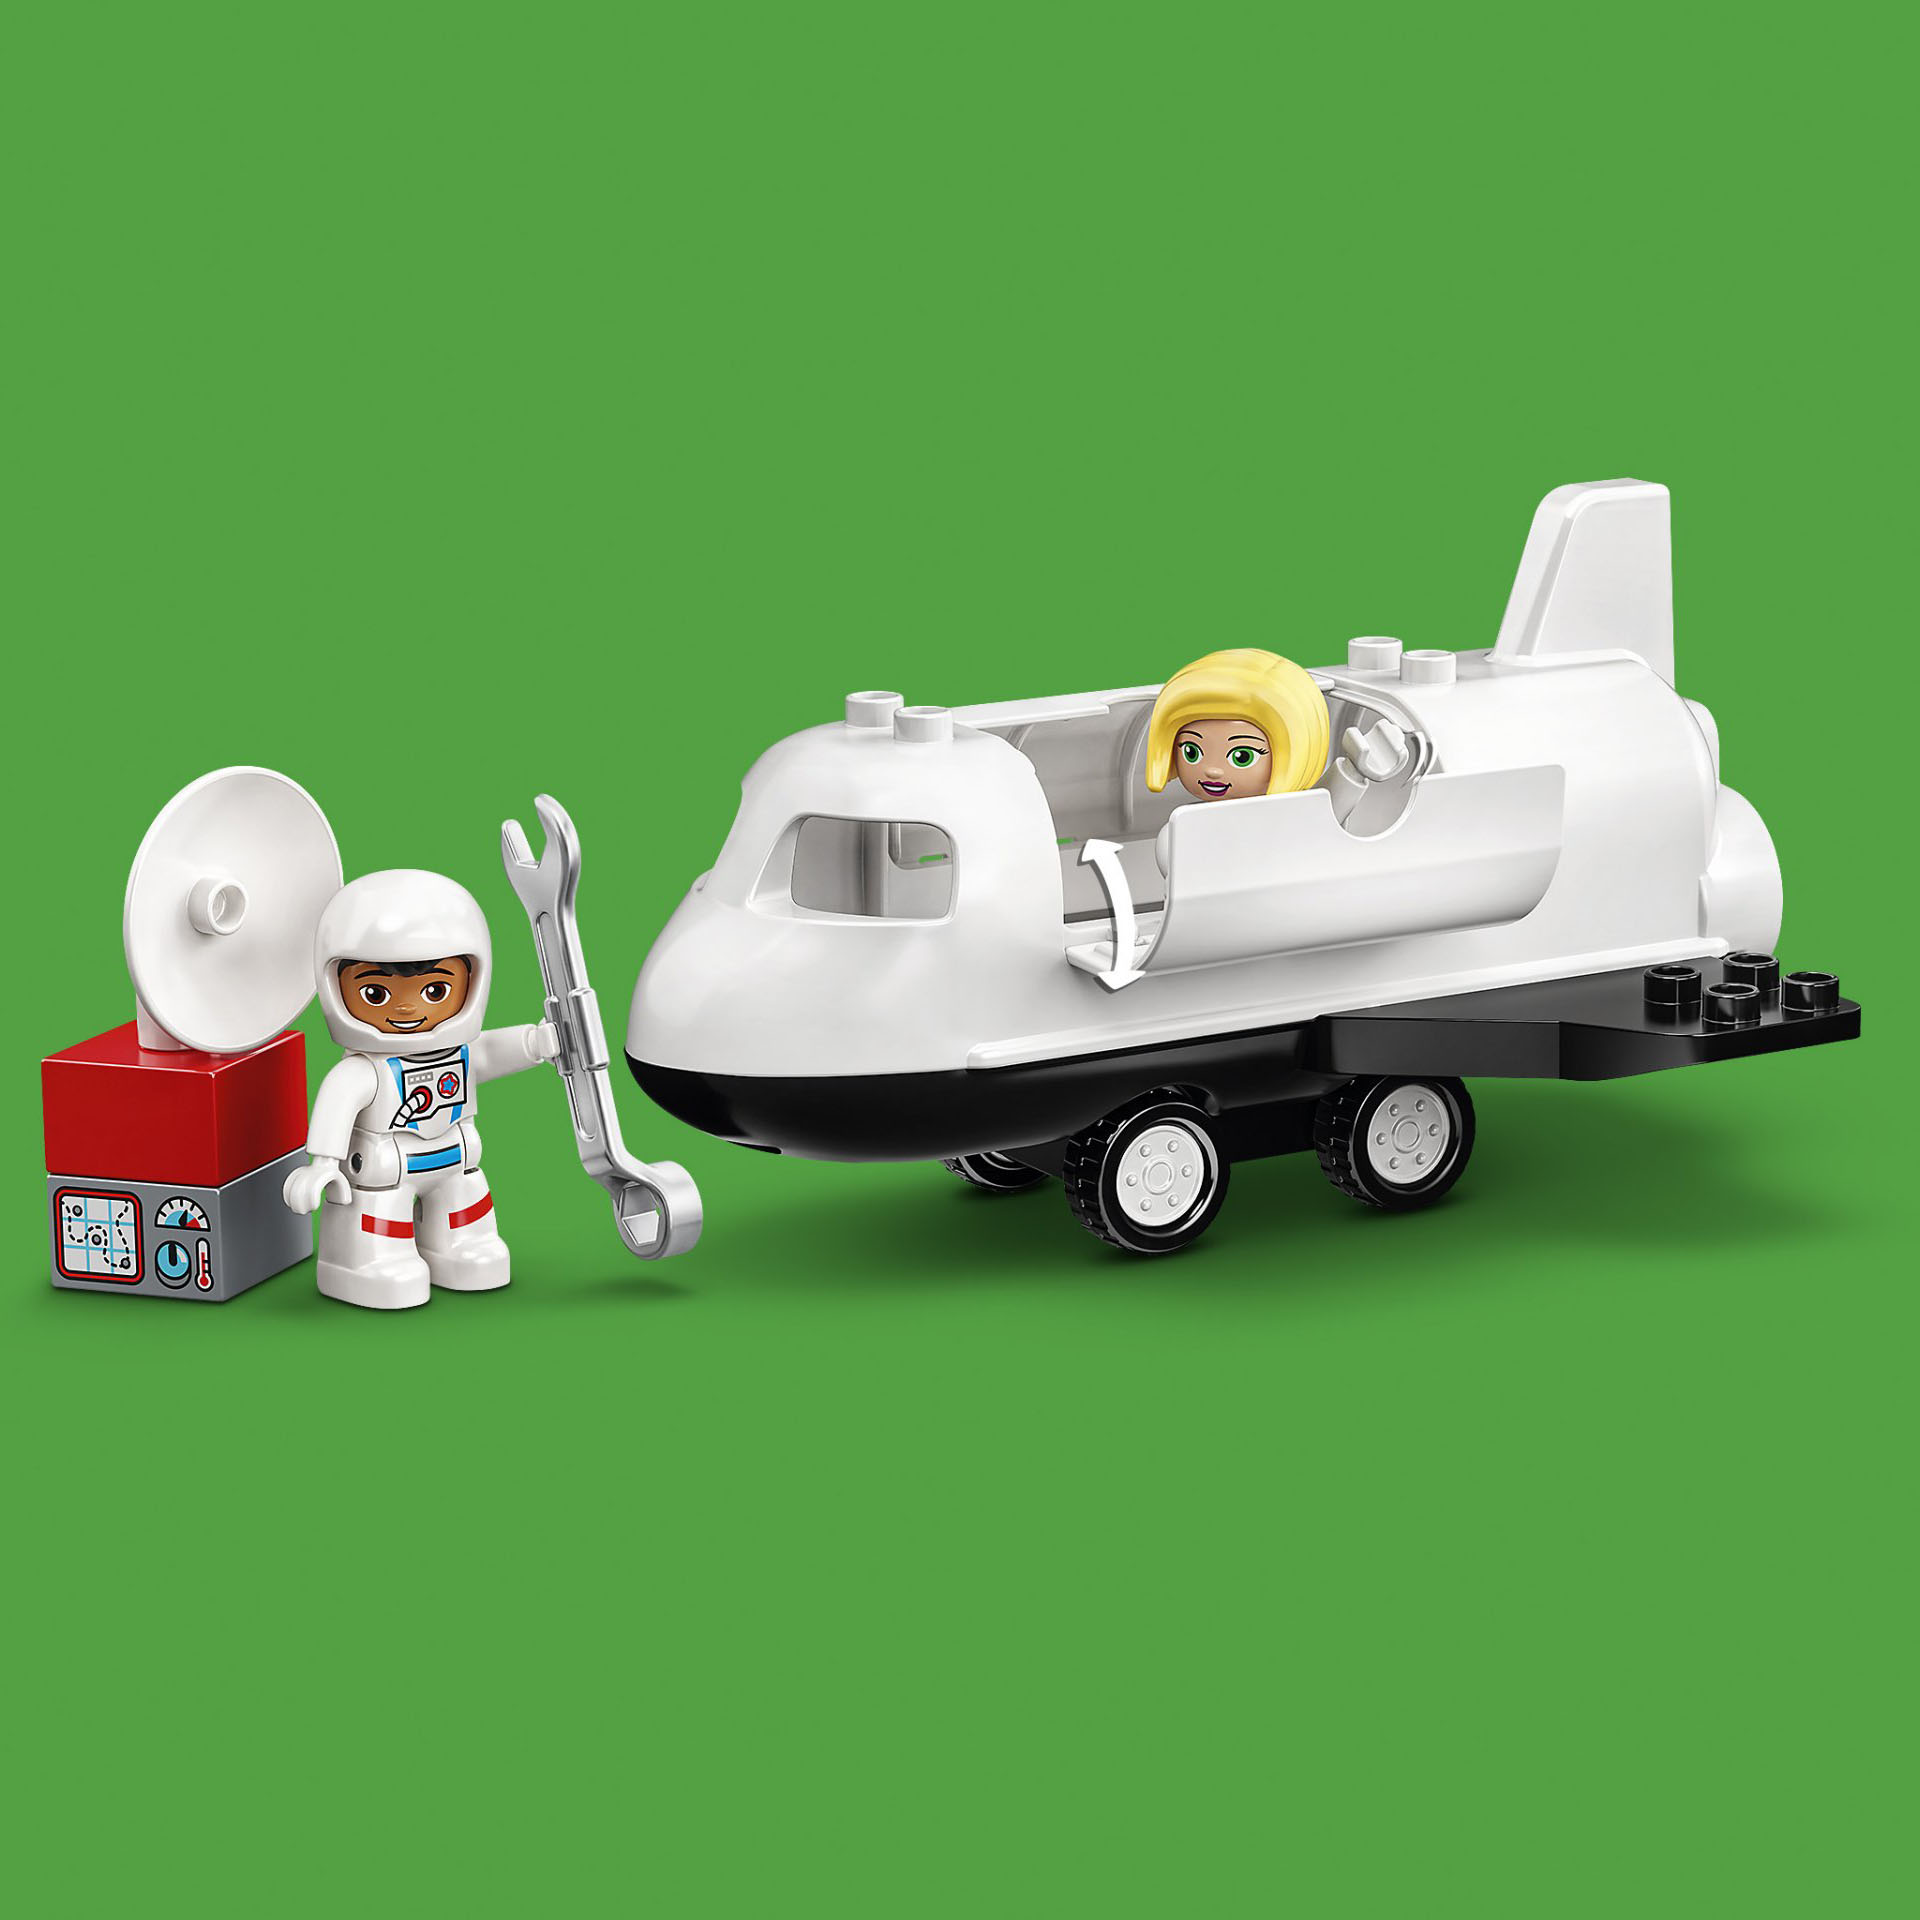 LEGO DUPLO Town Missione dello Space Shuttle, Set da Costruzione per Bambini 2 a 10944, , large